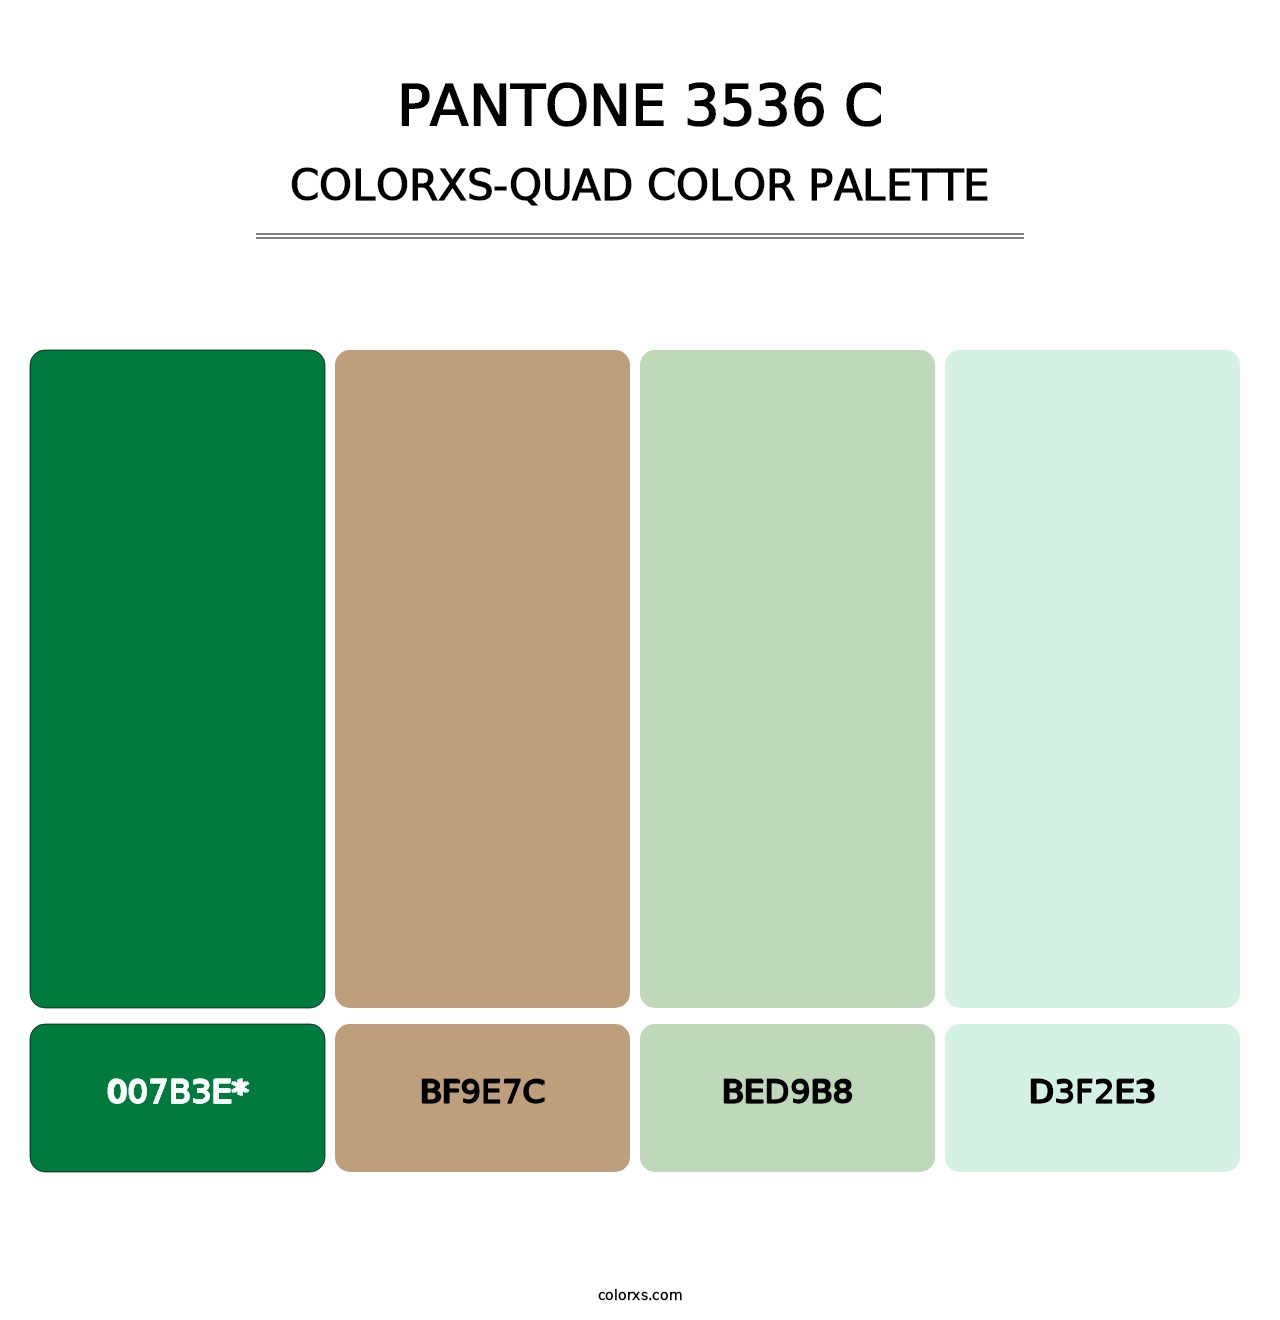 PANTONE 3536 C - Colorxs Quad Palette